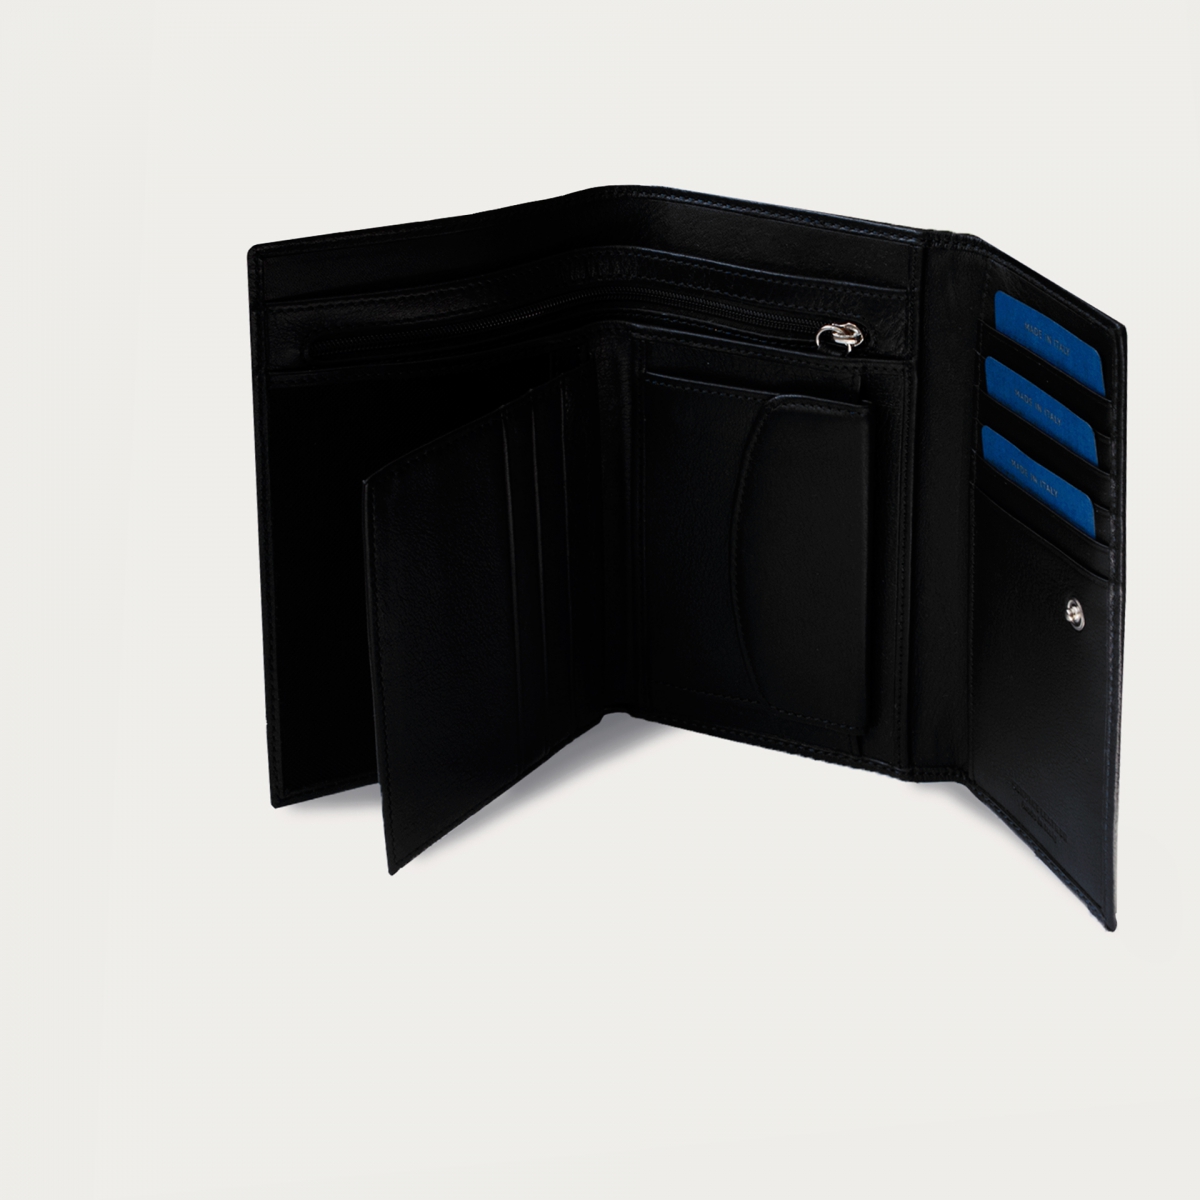 BRUCLE Geldbörse aus echtem Vollnarbenleder mit Kartenfach, Dokumentenfach und Geldbörse, Farbe schwarz